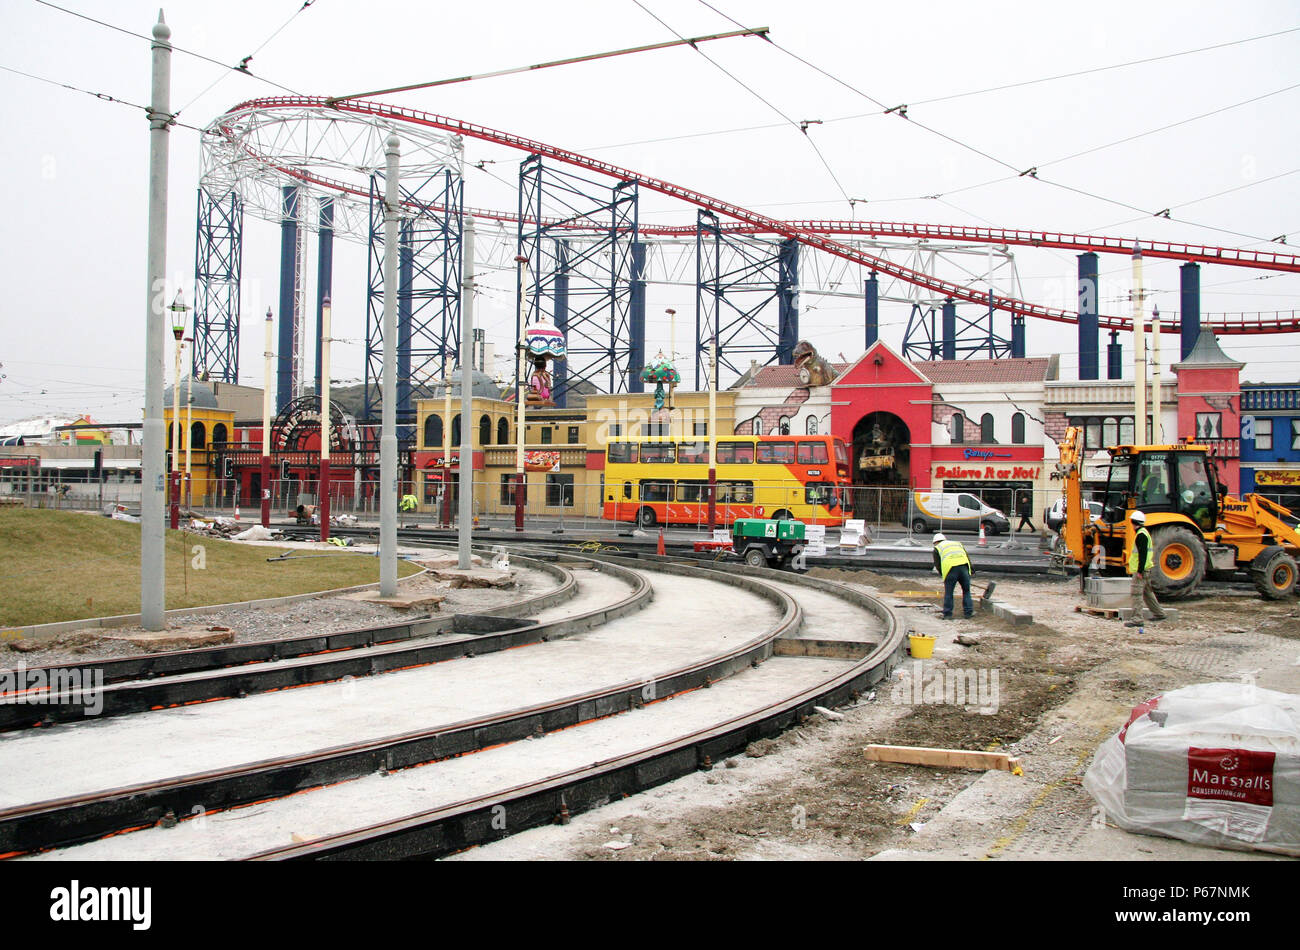 Blackpool Tram Track Replacement funktioniert, welche die Zeile, um eine neue "light rail" Straßenbahnen in die Zukunft zu tragen aktualisiert gesehen hat. Stockfoto